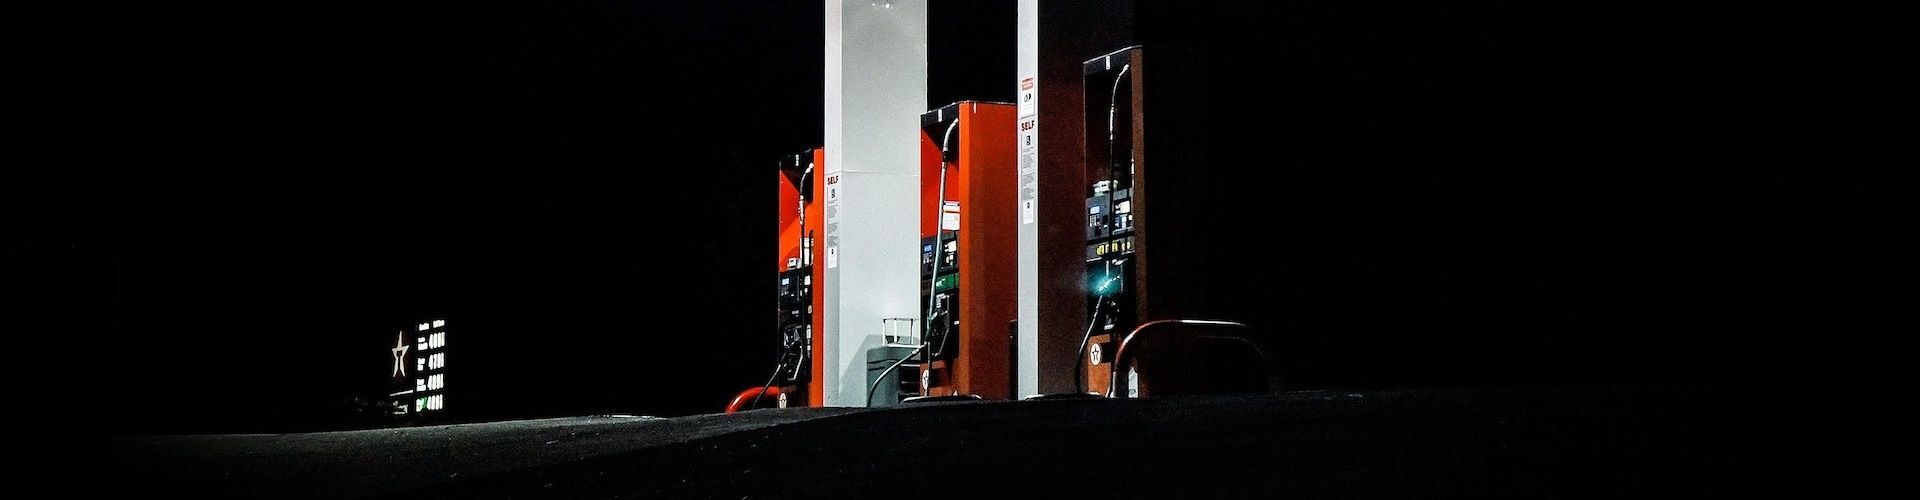 Gasolineras más baratas en Extremadura